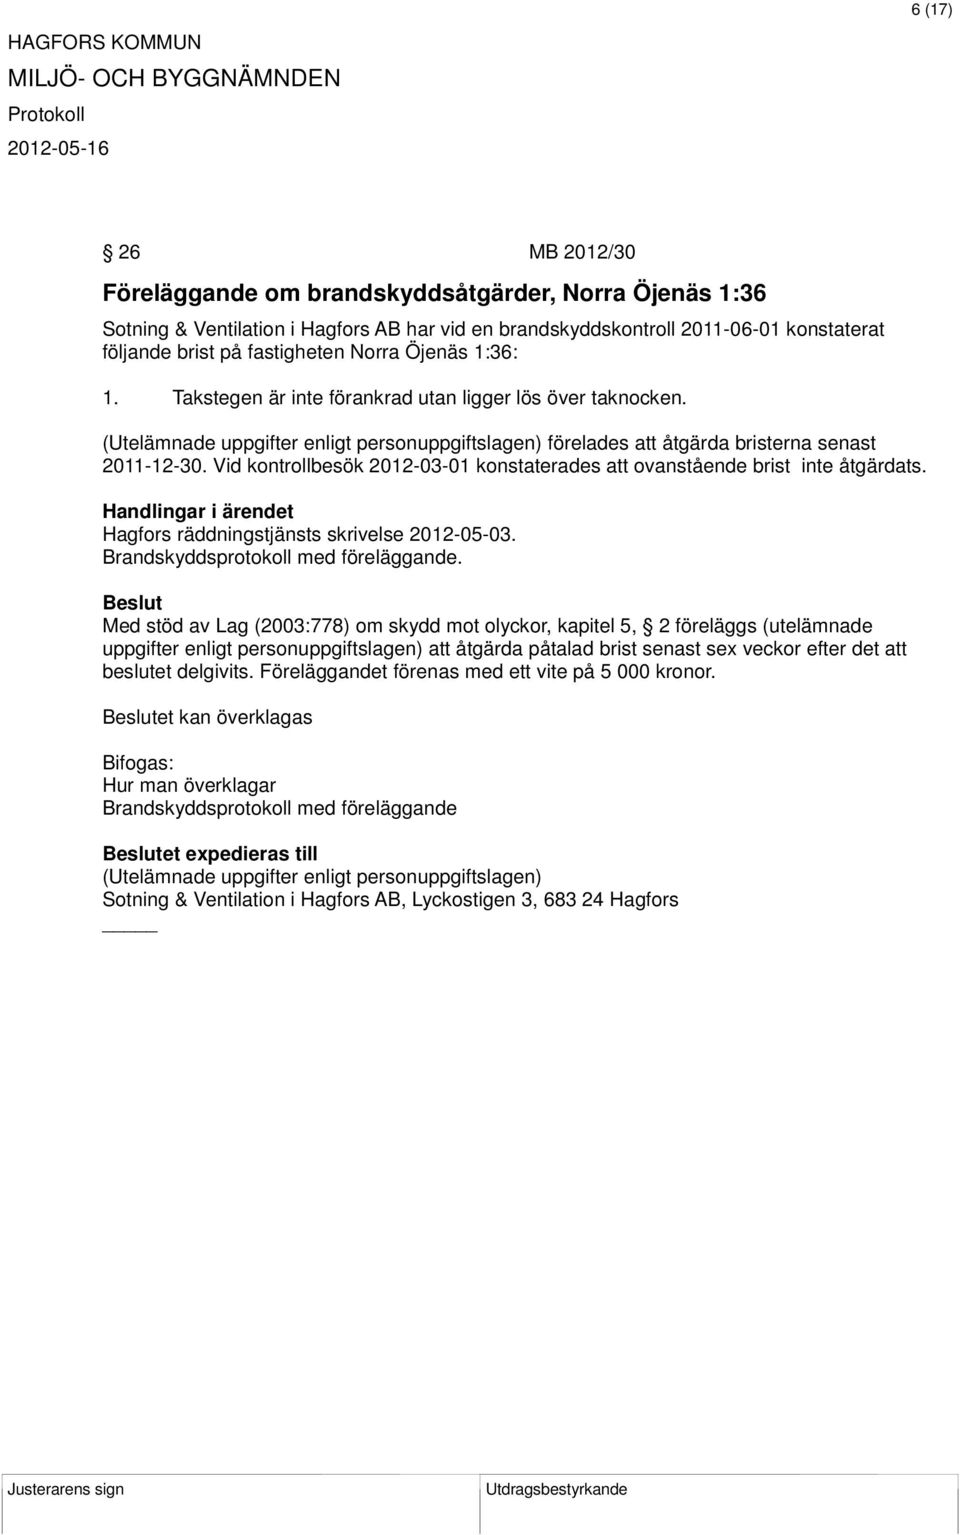 Vid kontrollbesök 2012-03-01 konstaterades att ovanstående brist inte åtgärdats. Hagfors räddningstjänsts skrivelse 2012-05-03.